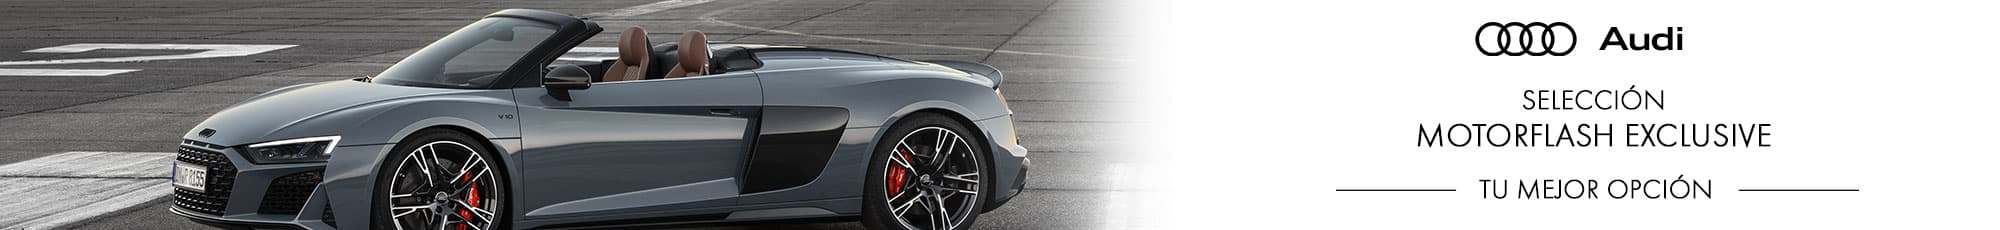 Motorflash exclusive de la marca Audi